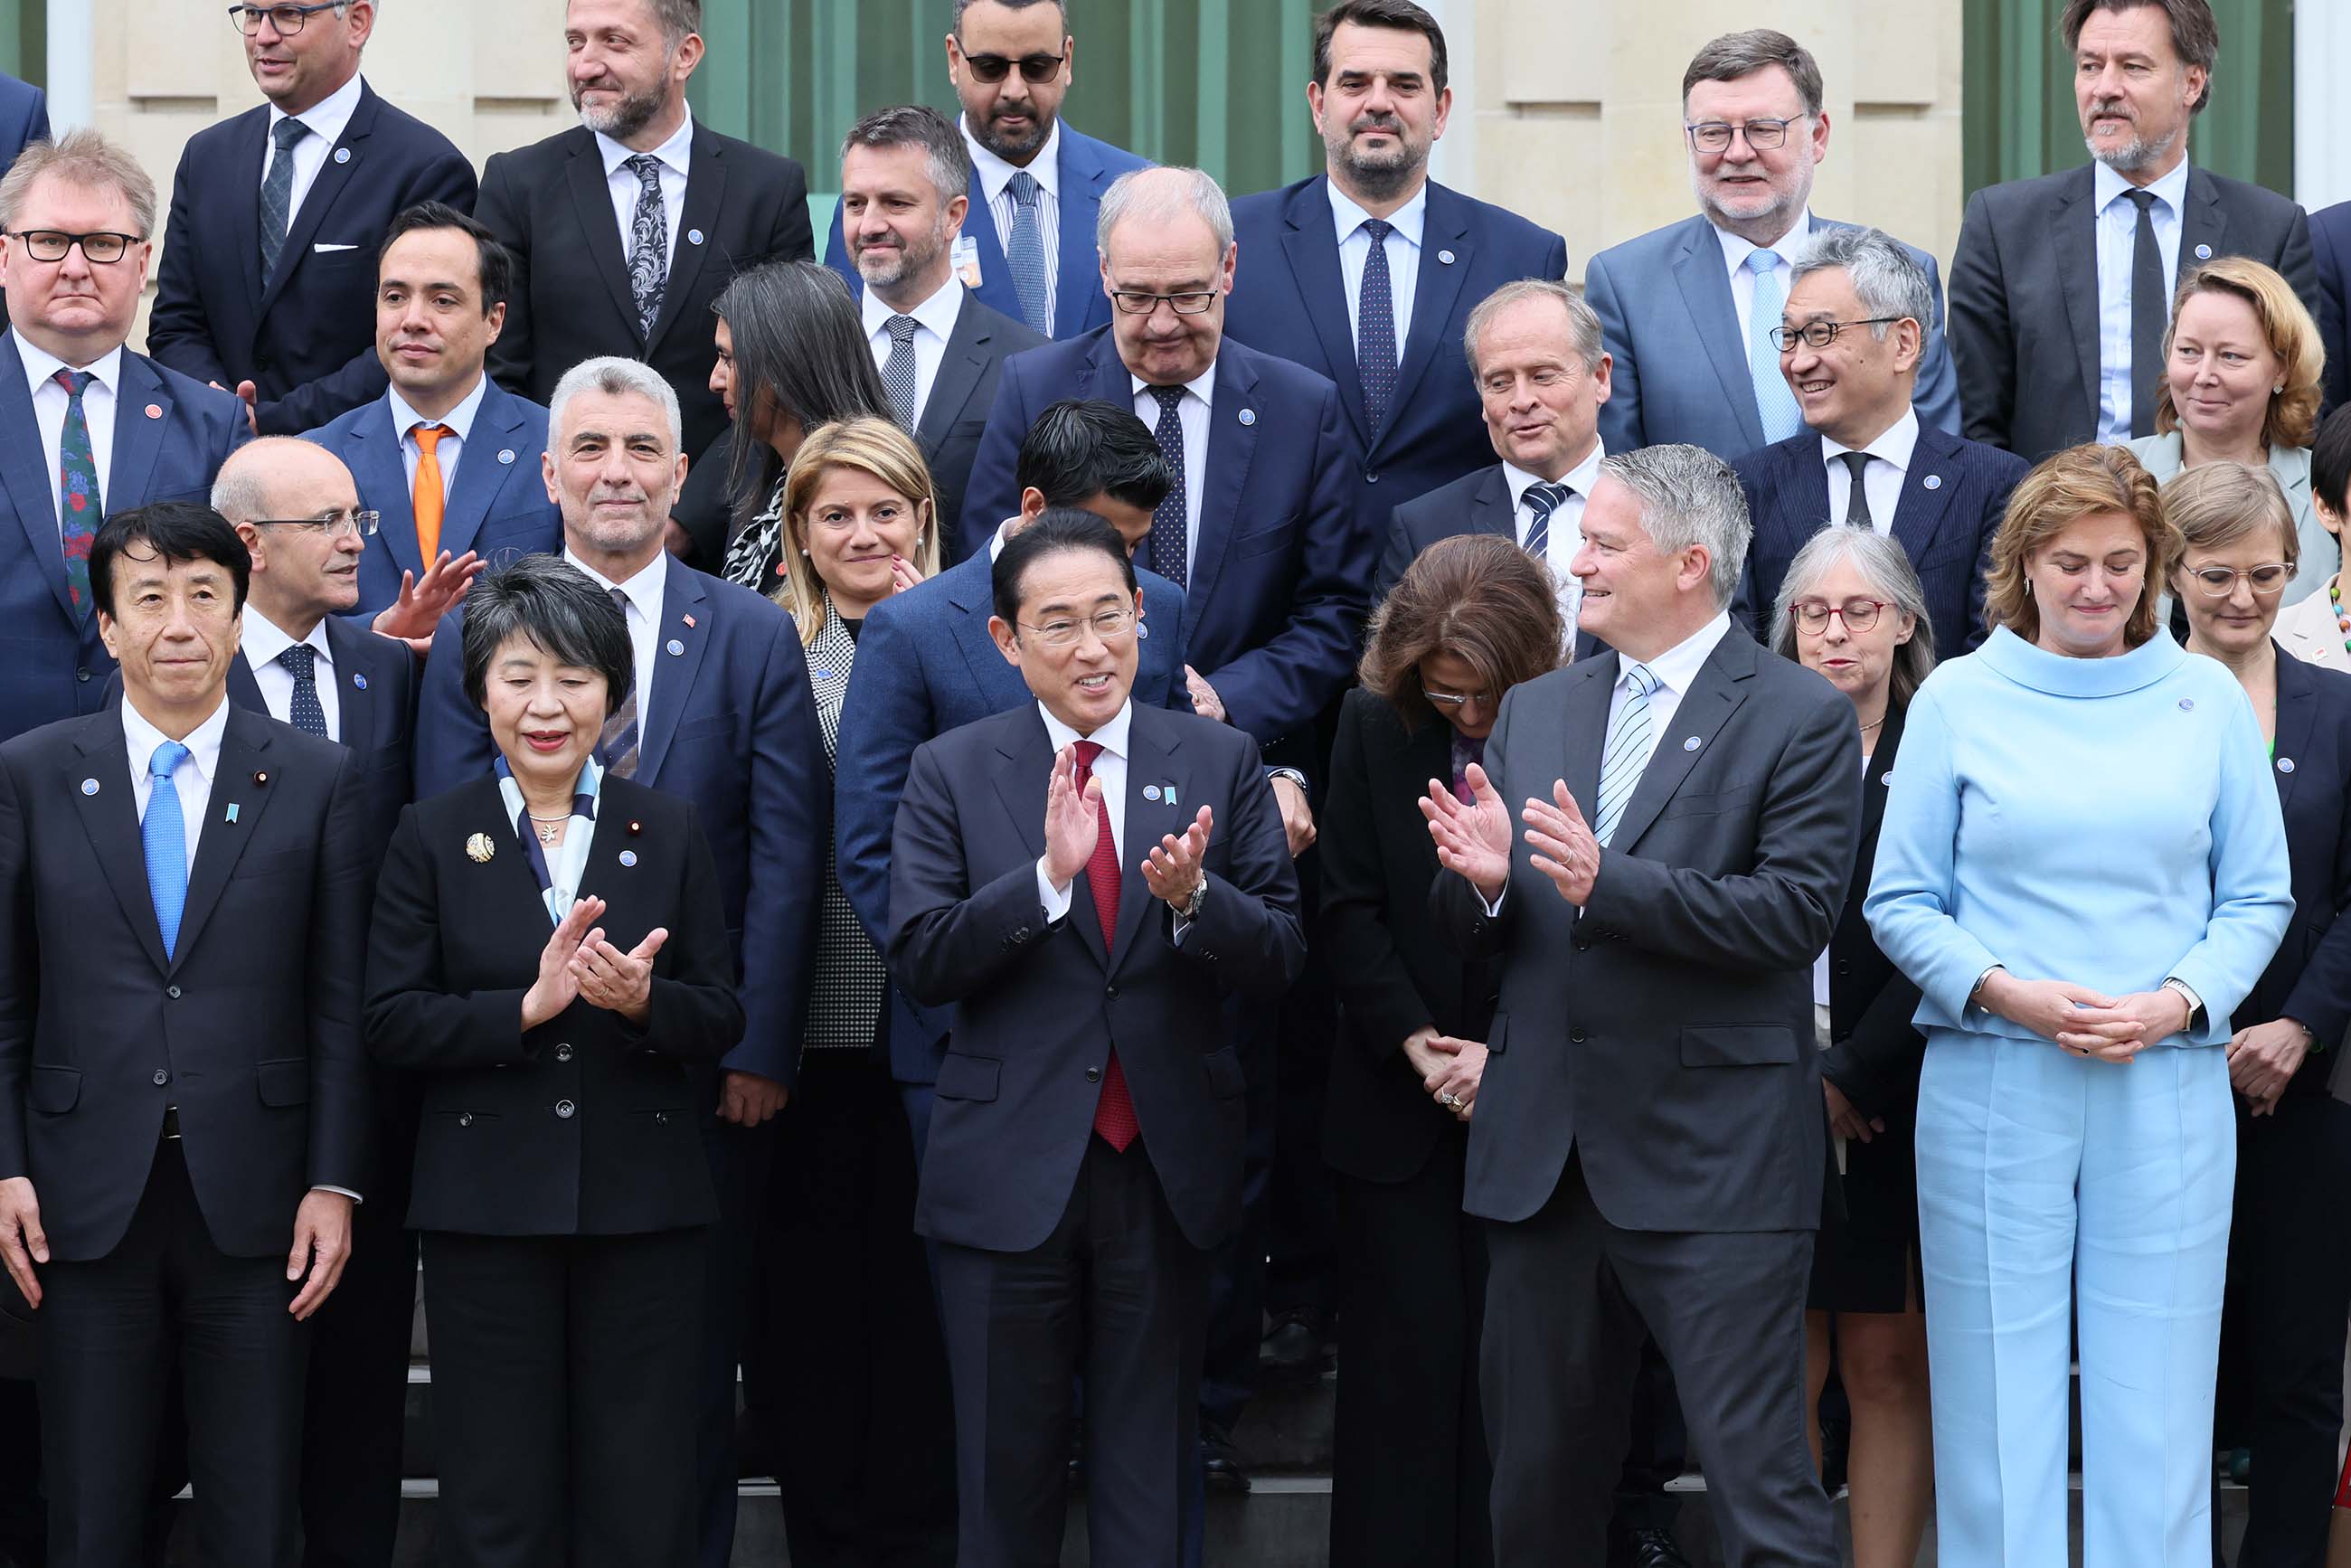 OECD Commemorative Photo (3)